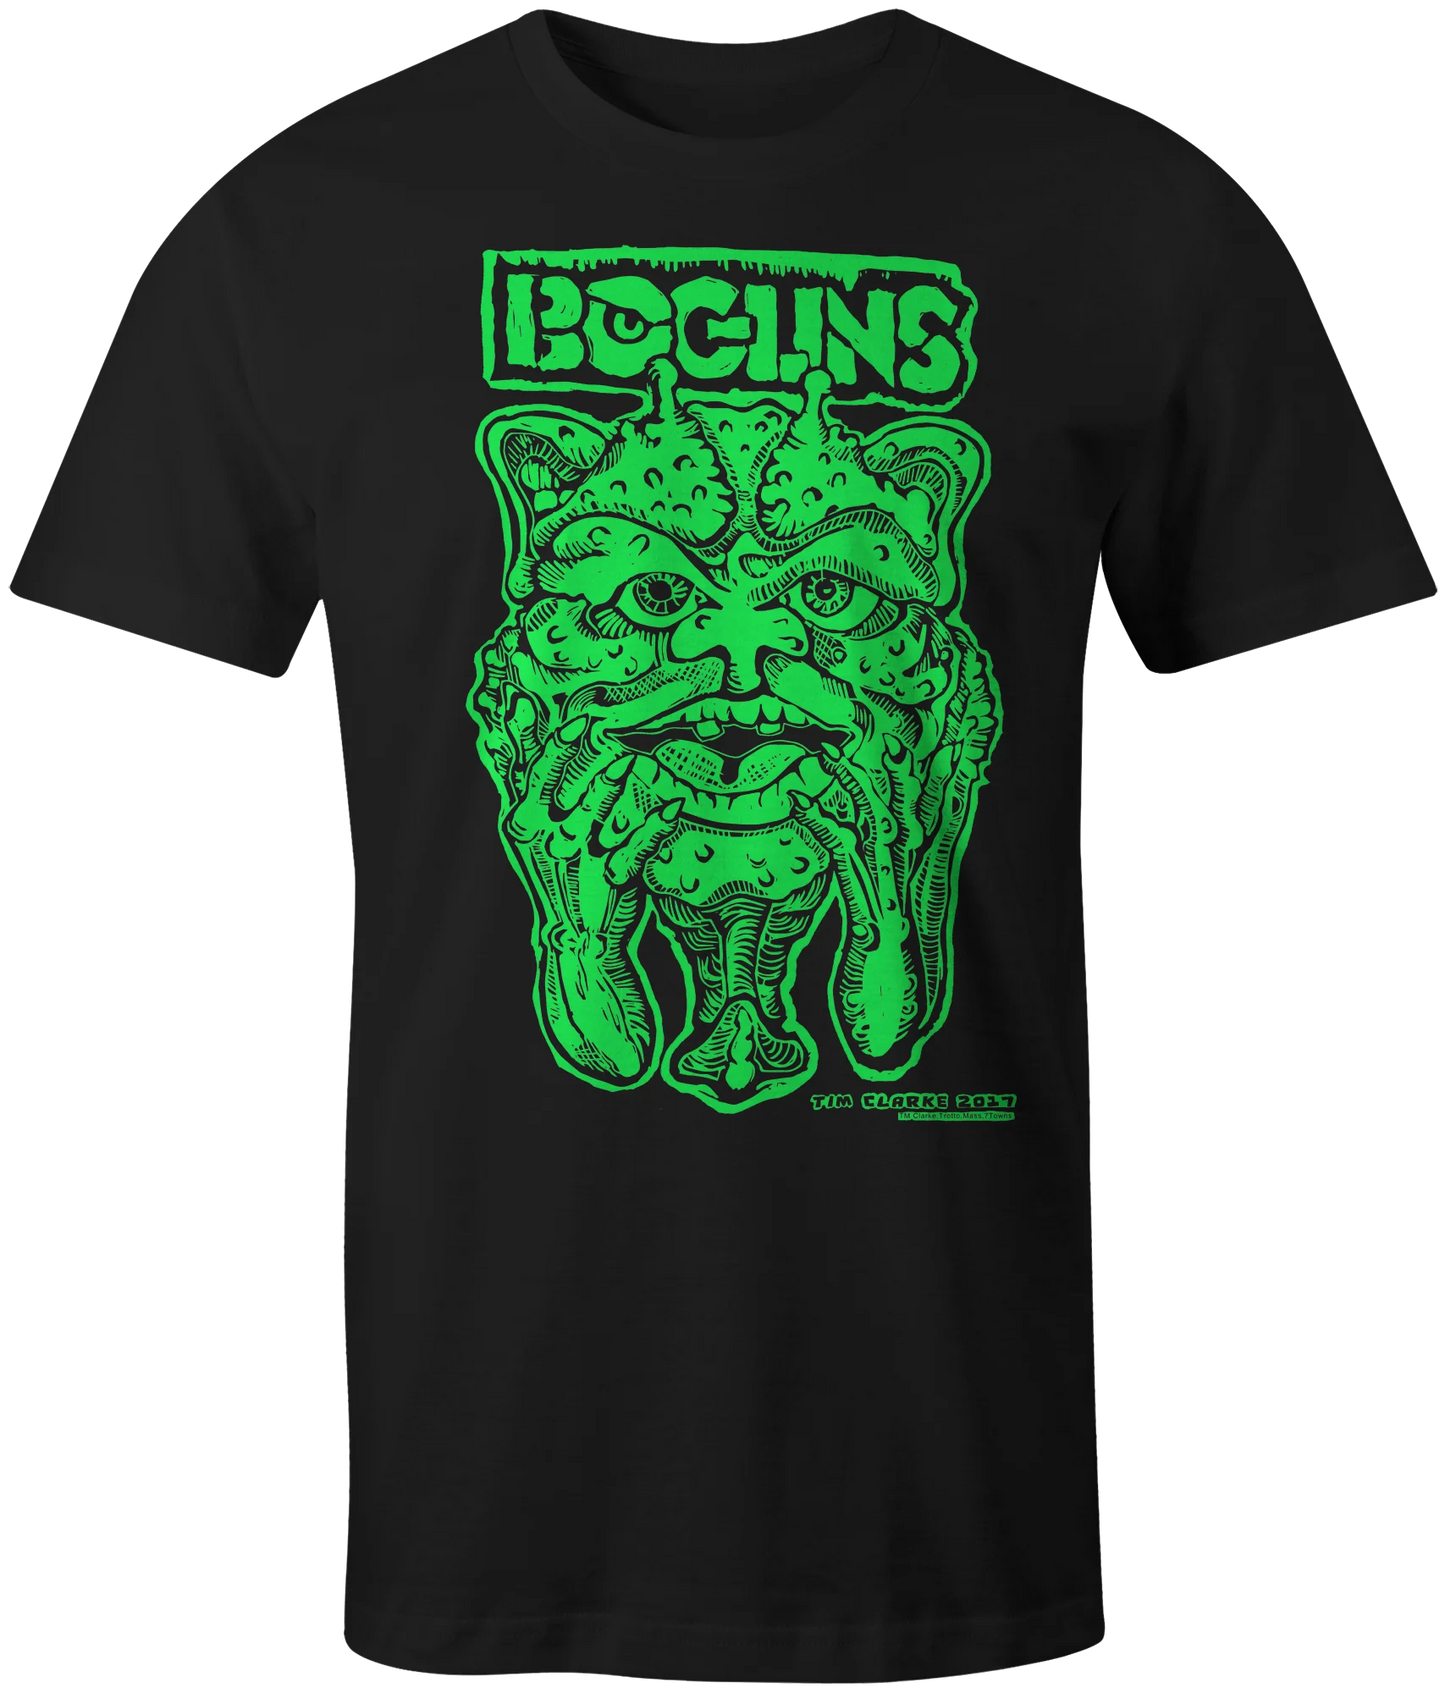 BOGLINS T-SHIRT (Slime green design)